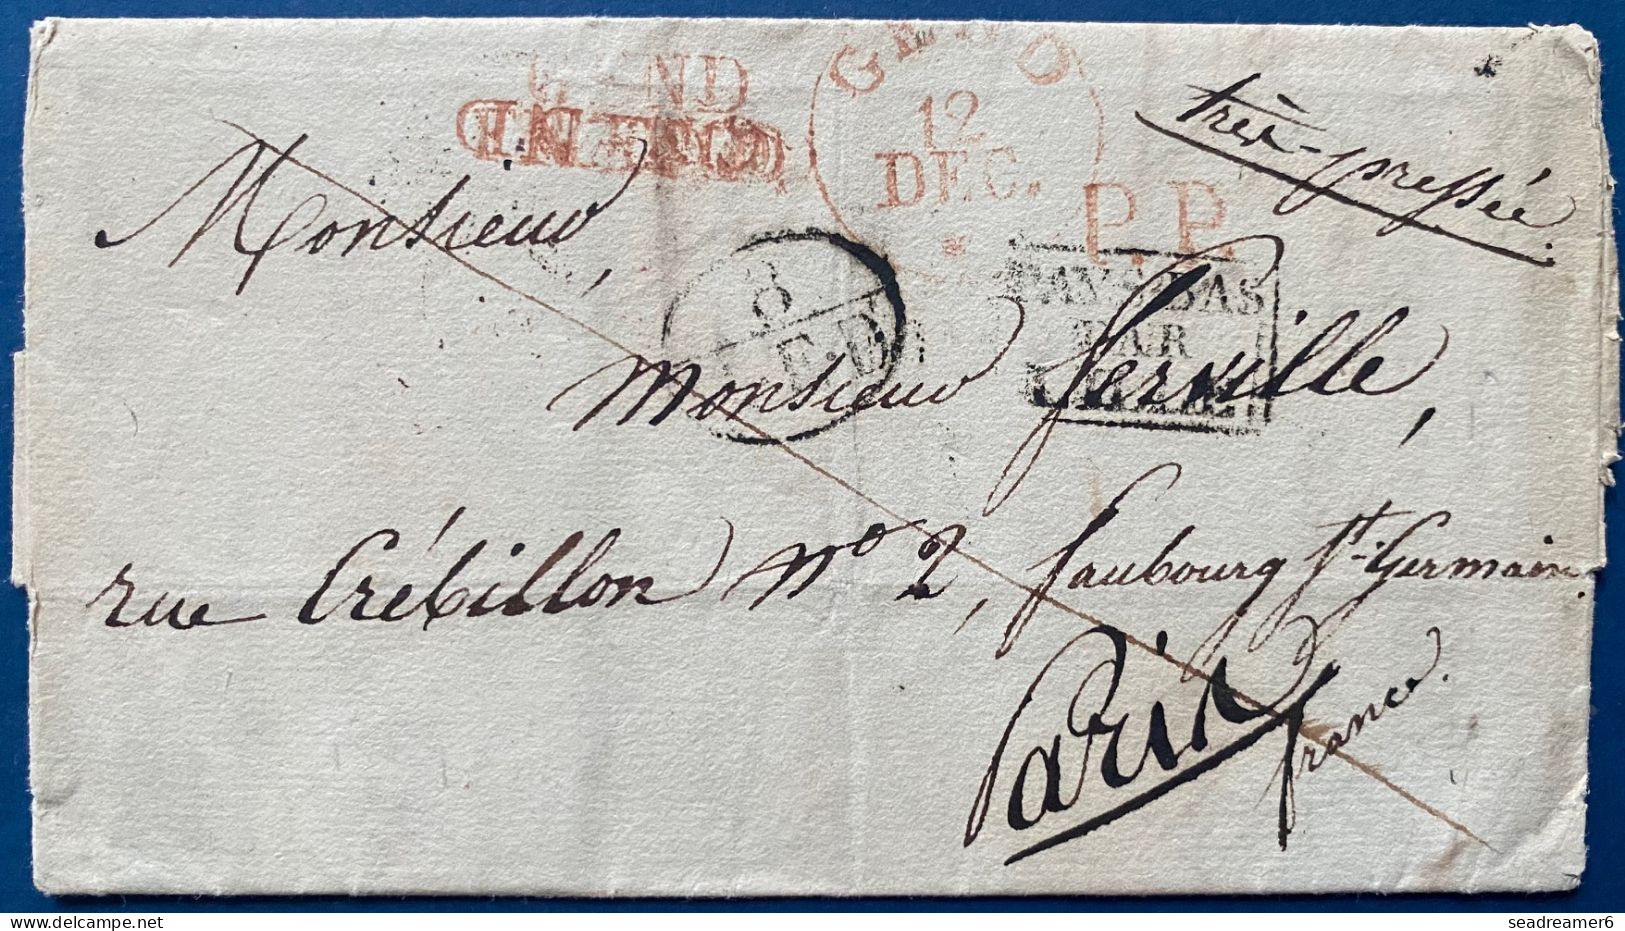 Lettre 1828 Marque Hollandaise Rouge "GEND/FRANCO " Annulée + PP +(8/AED) + Càd +" PAYS BAS PAR LILLE " + Pour PARIS RR - 1815-1830 (Période Hollandaise)